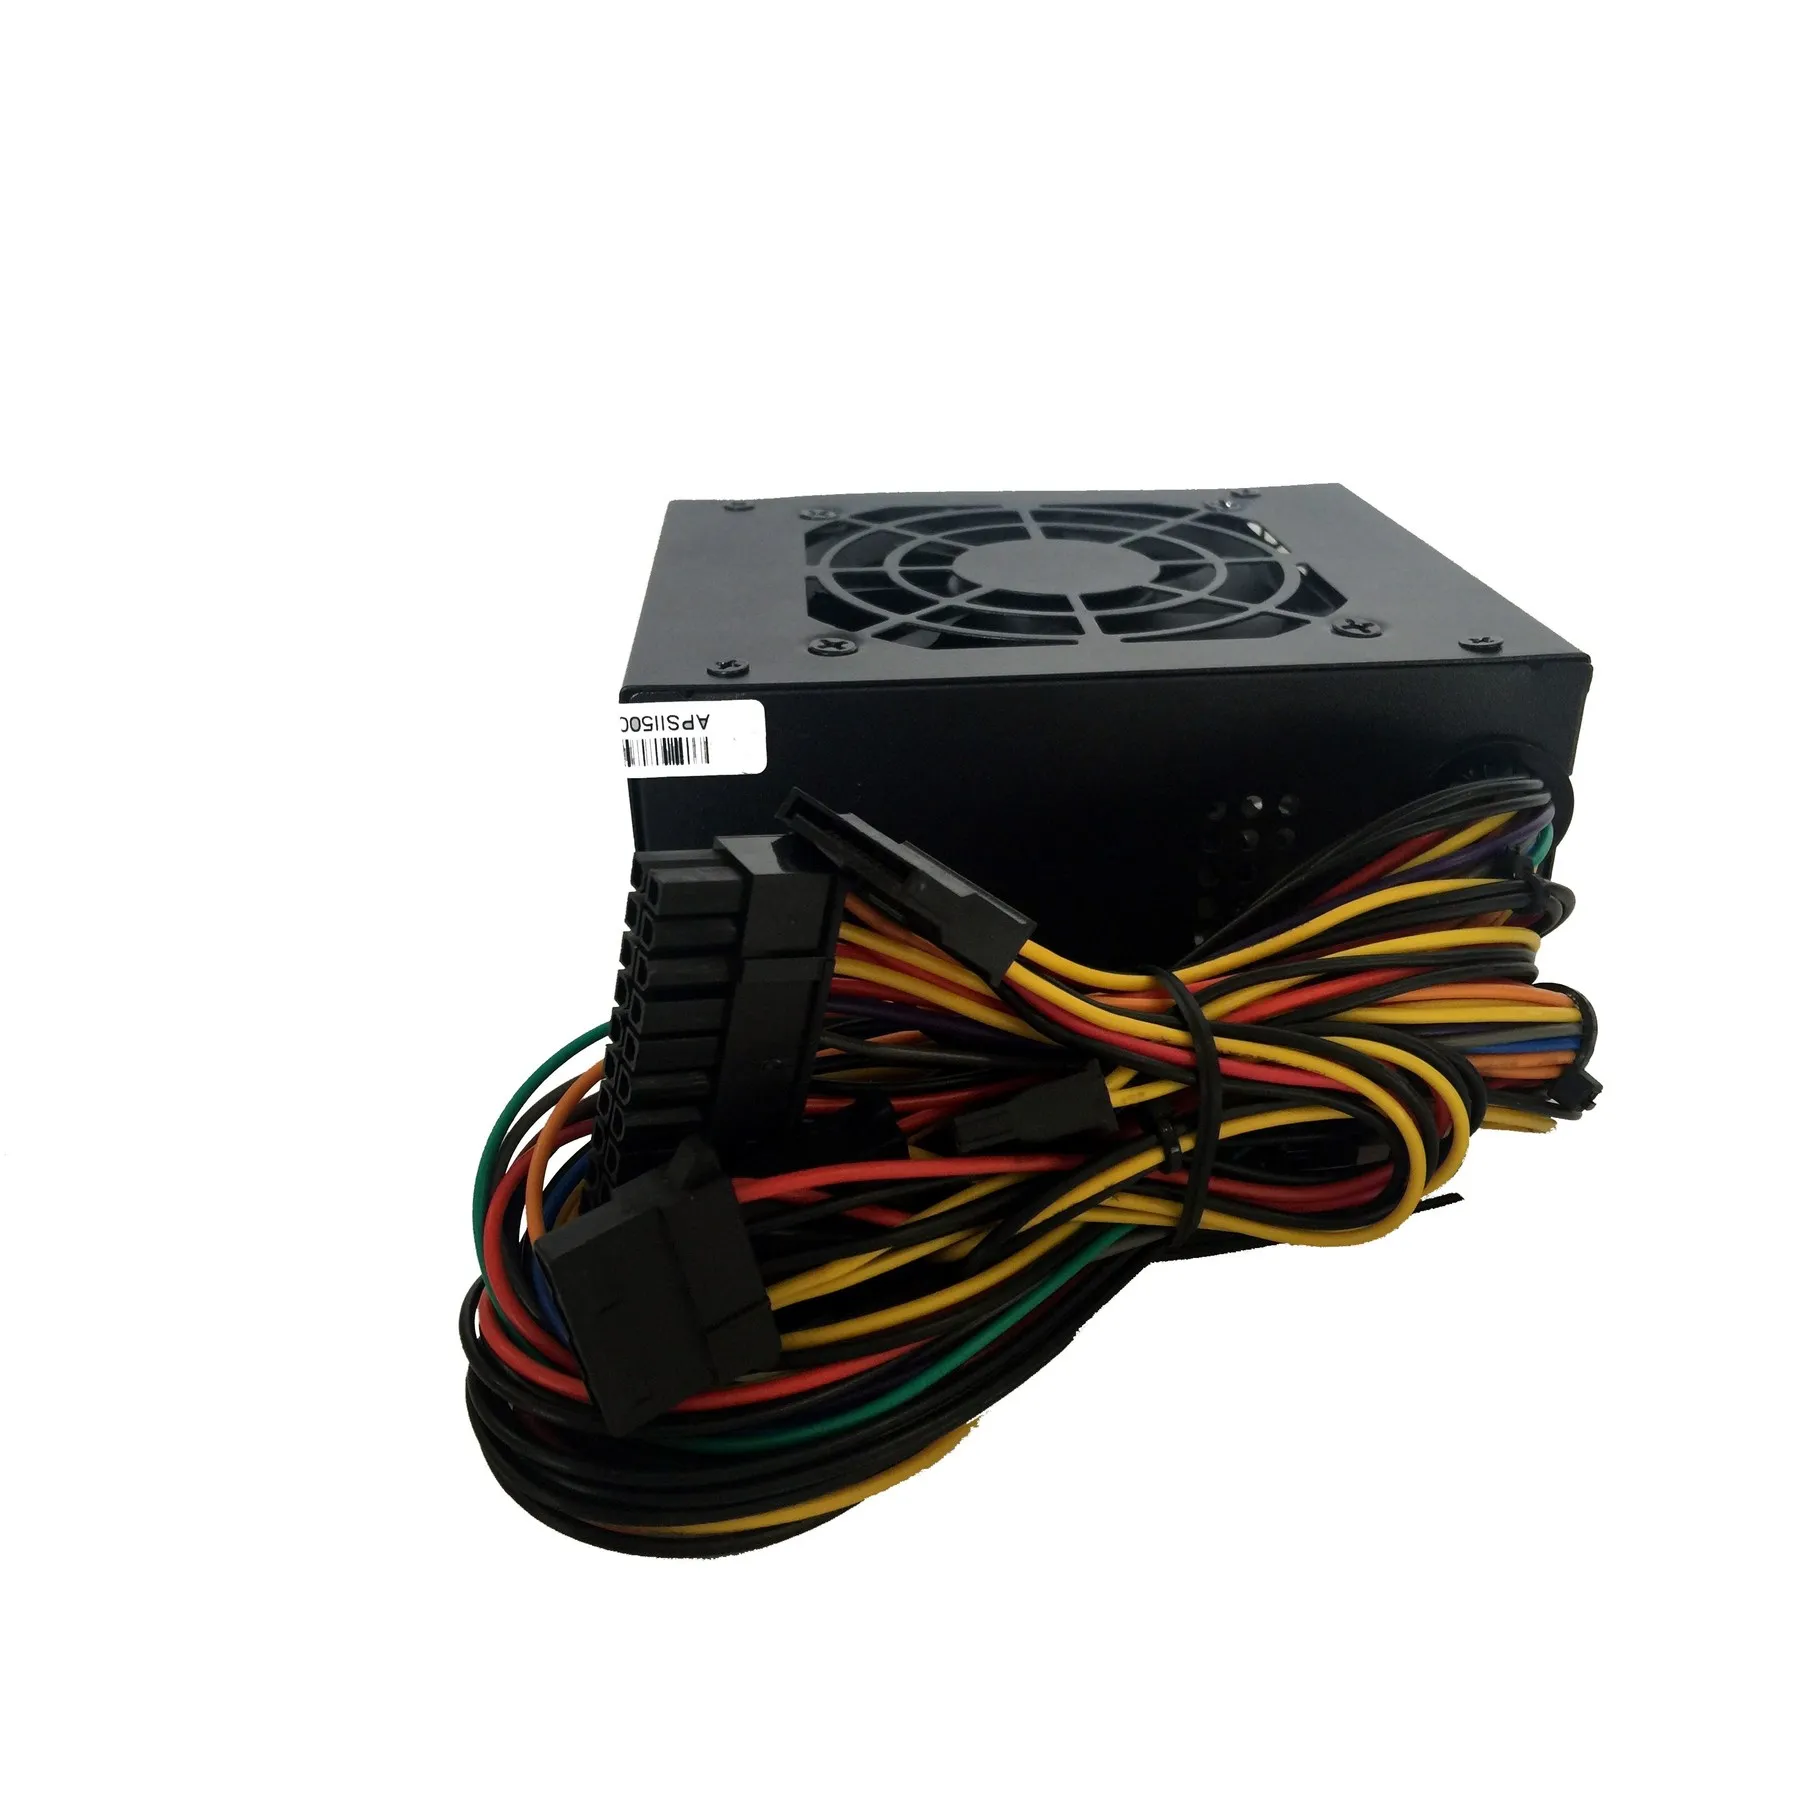 Tacens Anima APSII500, PC, putere 500 W, 12 V, ventilator de 8 cm, anti-vibrații 0